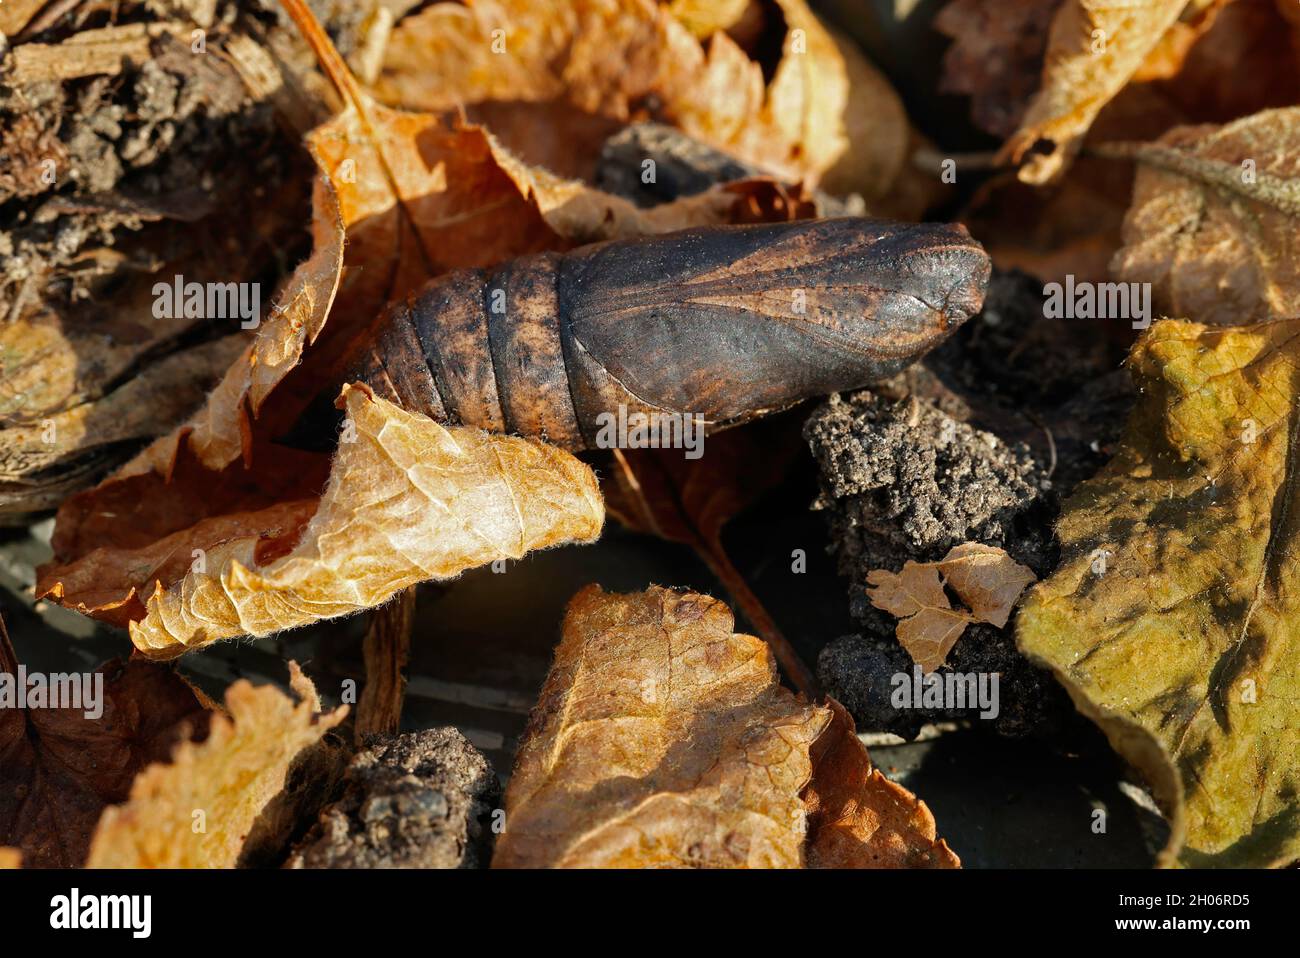 Pupa or chrysalis of Elephant hawk moth Deilephila elpenor overwintering in dead leaves Cotswold UK Stock Photo